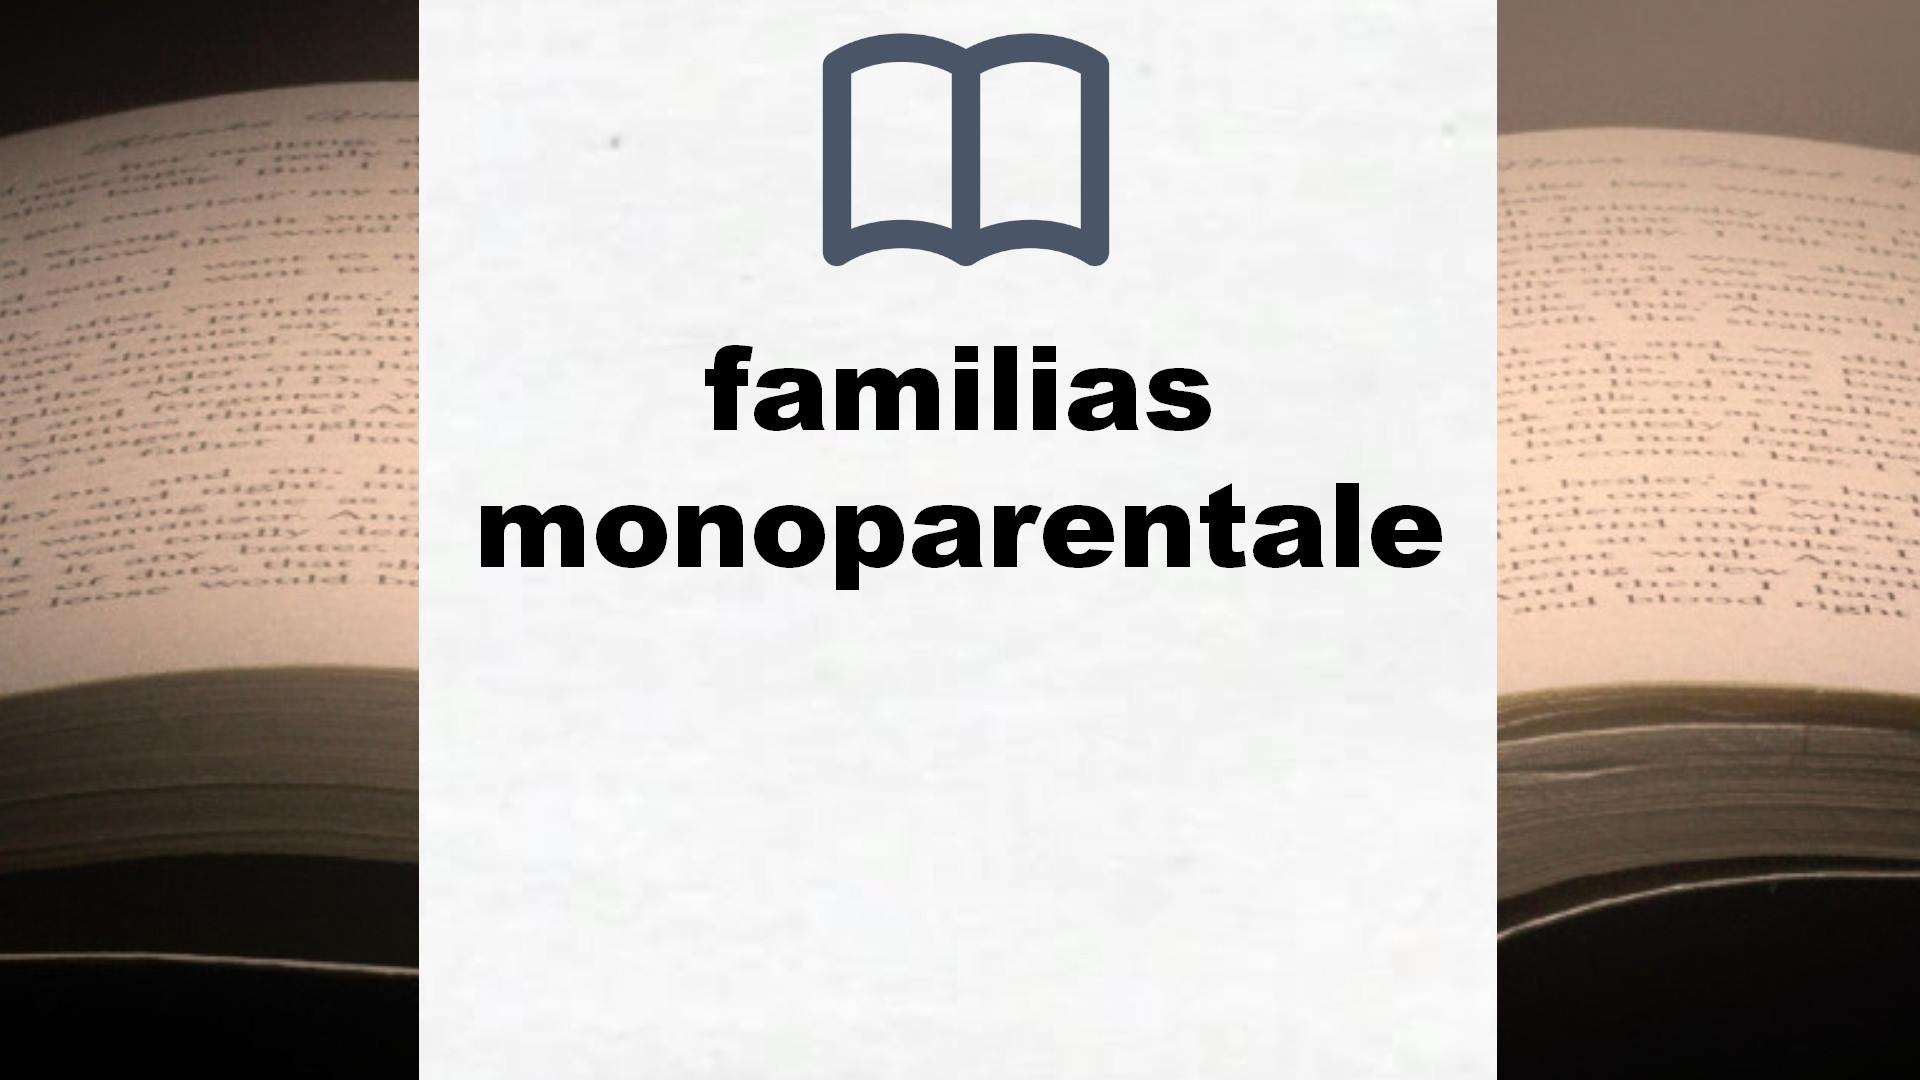 Libros sobre familias monoparentales